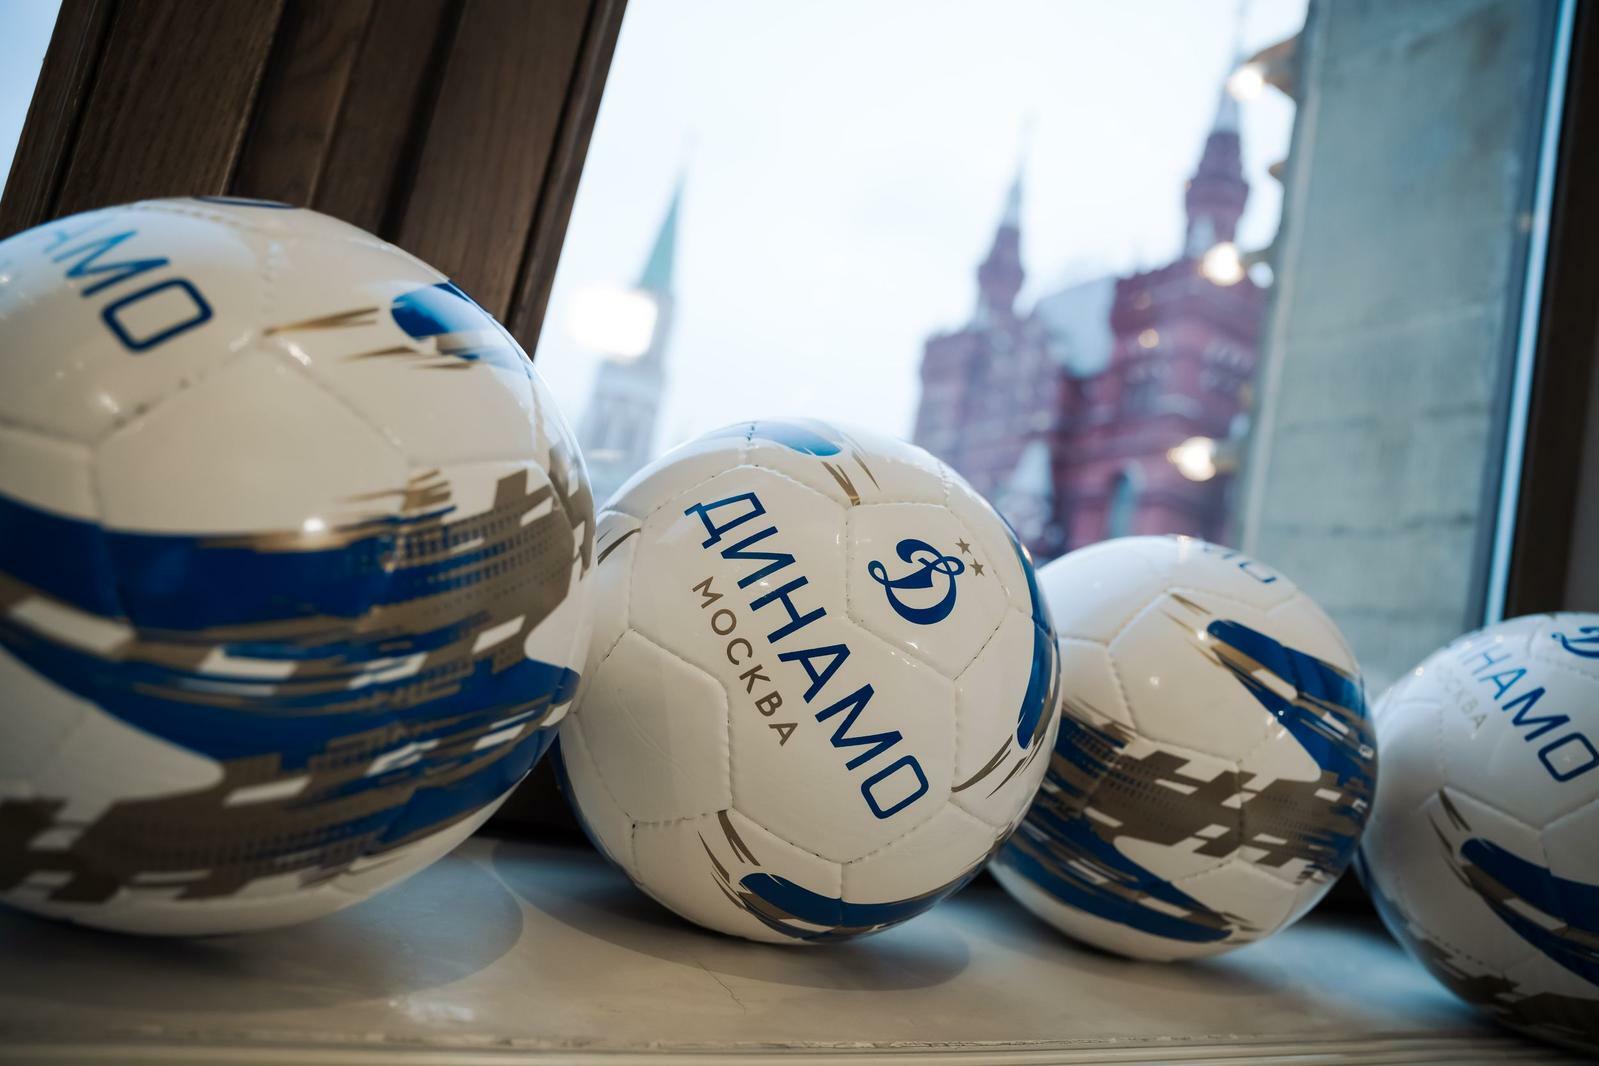 Noticias del FC "Dynamo" Moscú | Eventos en la Casa BetBoom Dynamo esta semana. Sitio oficial del club Dynamo.